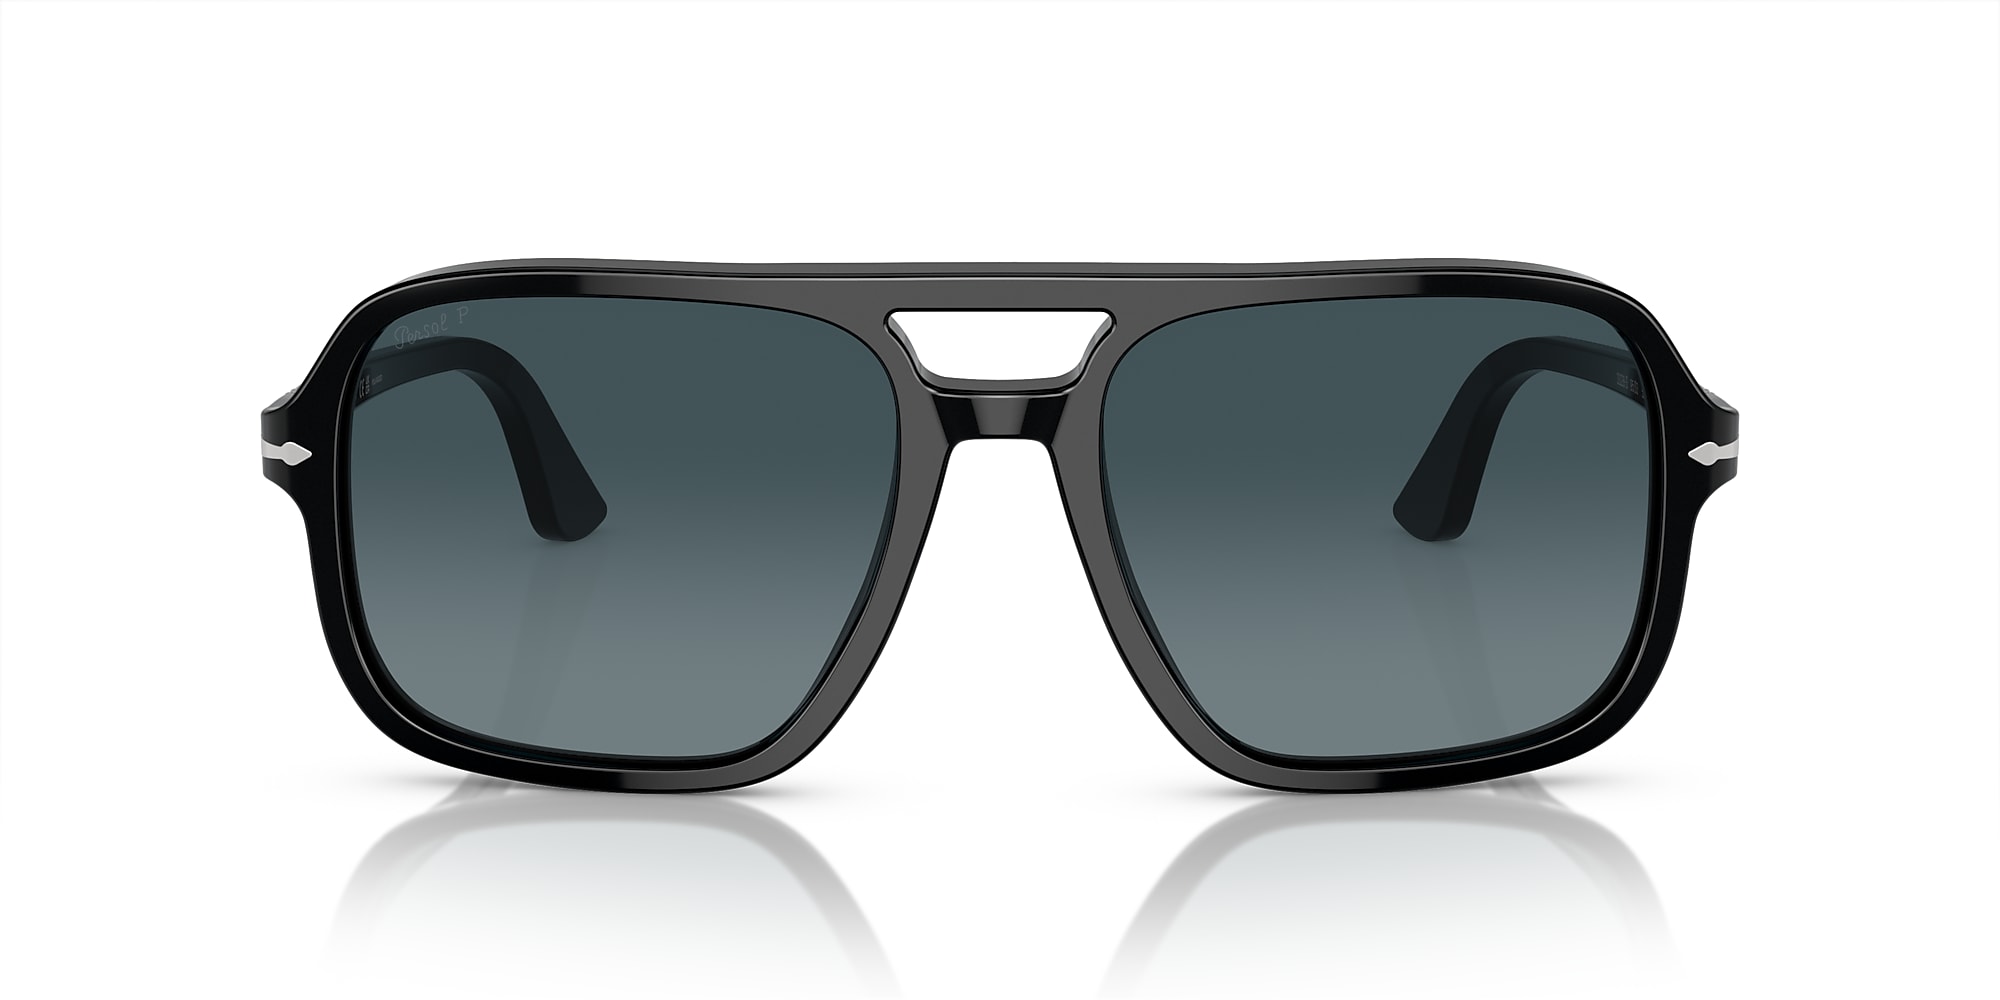 Persol Sunglasses PO3328S-95/S3